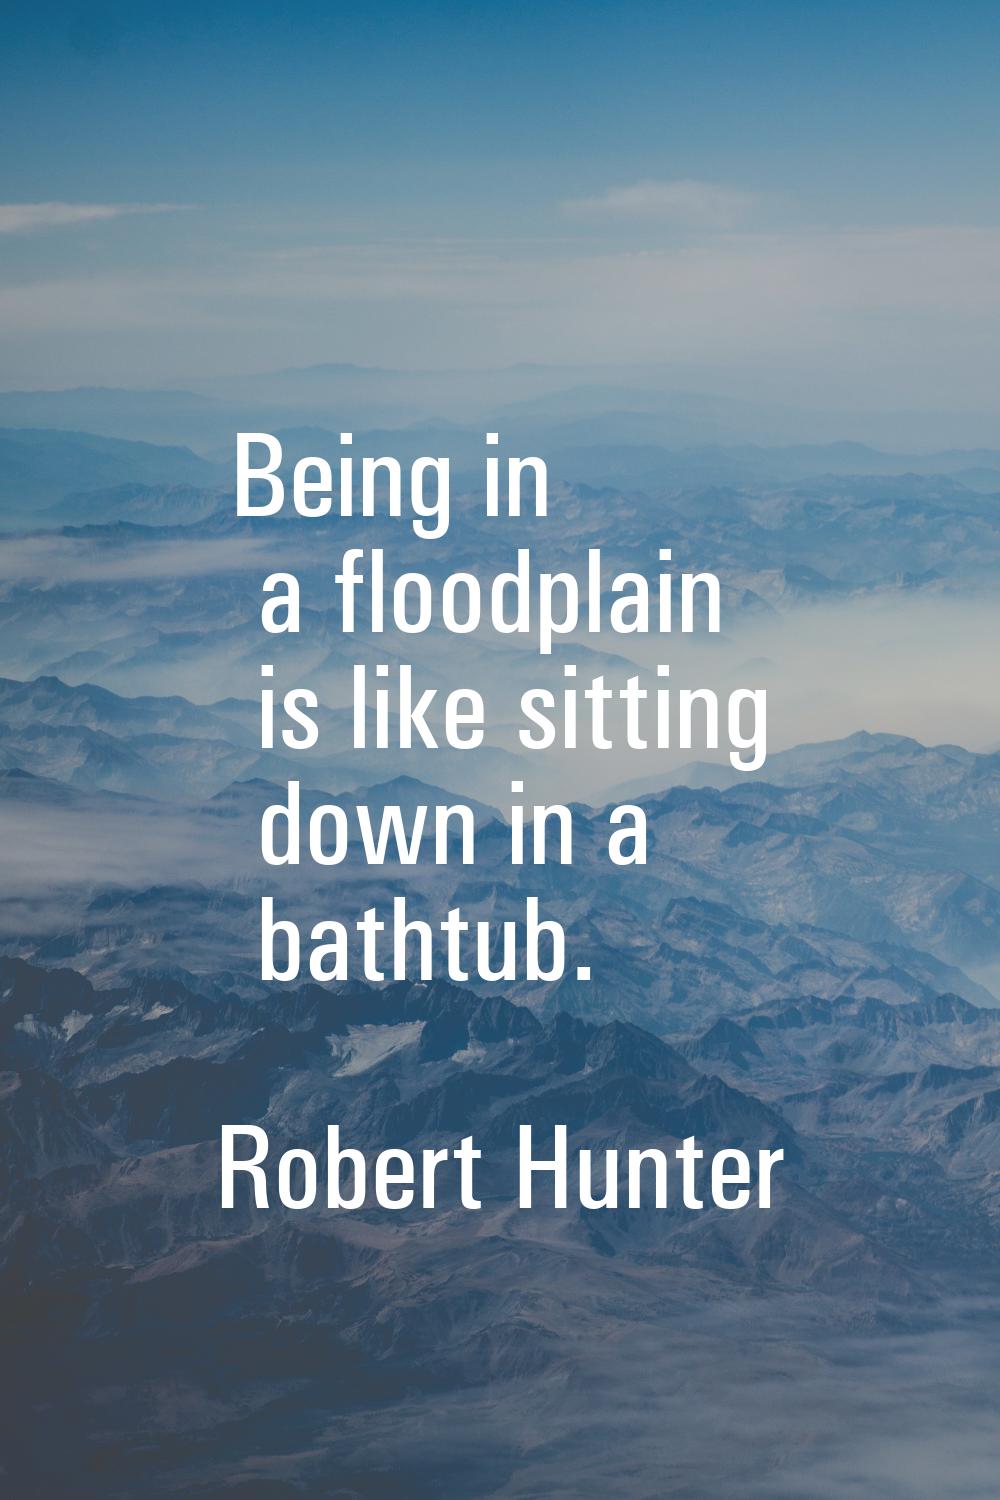 Being in a floodplain is like sitting down in a bathtub.